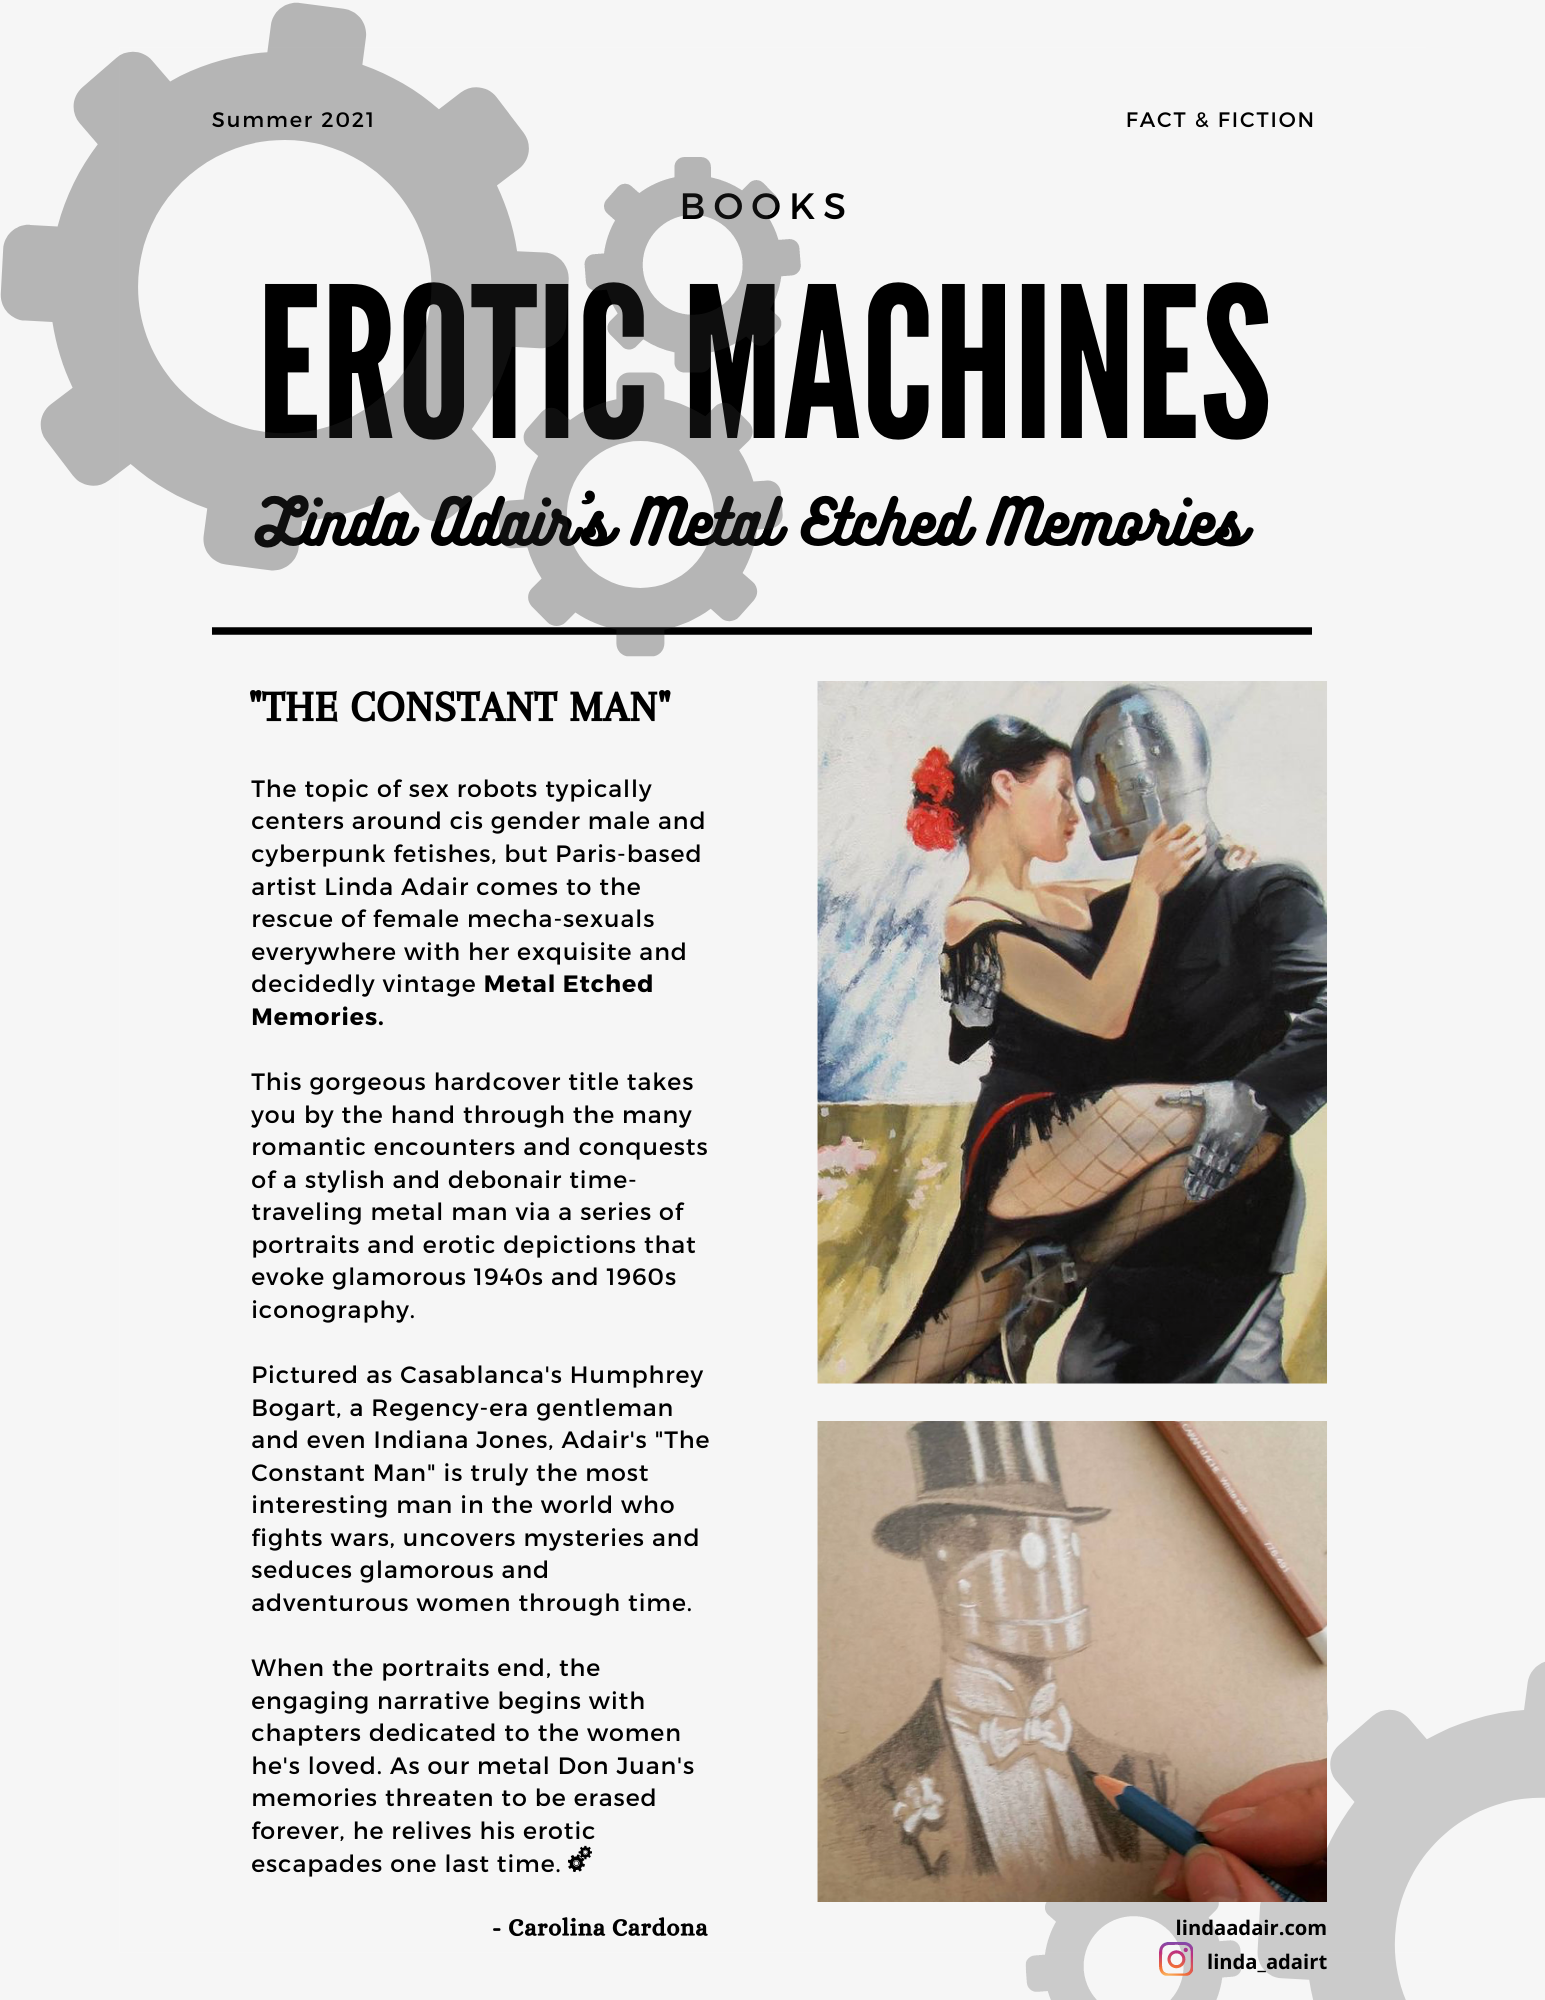 Erotic Machines: A review off Linda Adair’s Metal Etched Memories